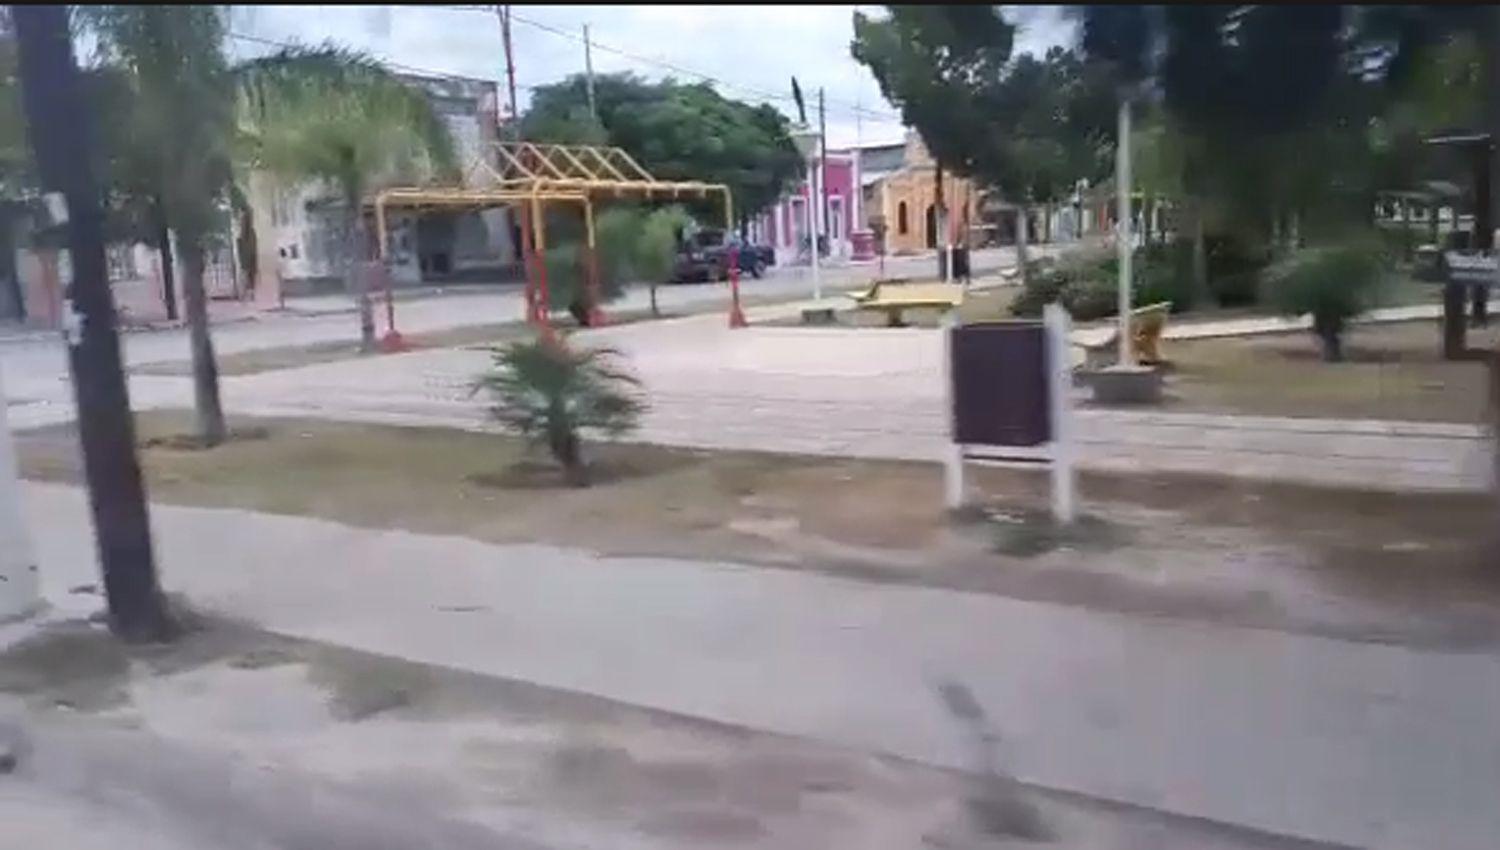 VIDEOS  Vaciacutea y desolada imagen de la tarde en Suncho Corral tras su total blindaje